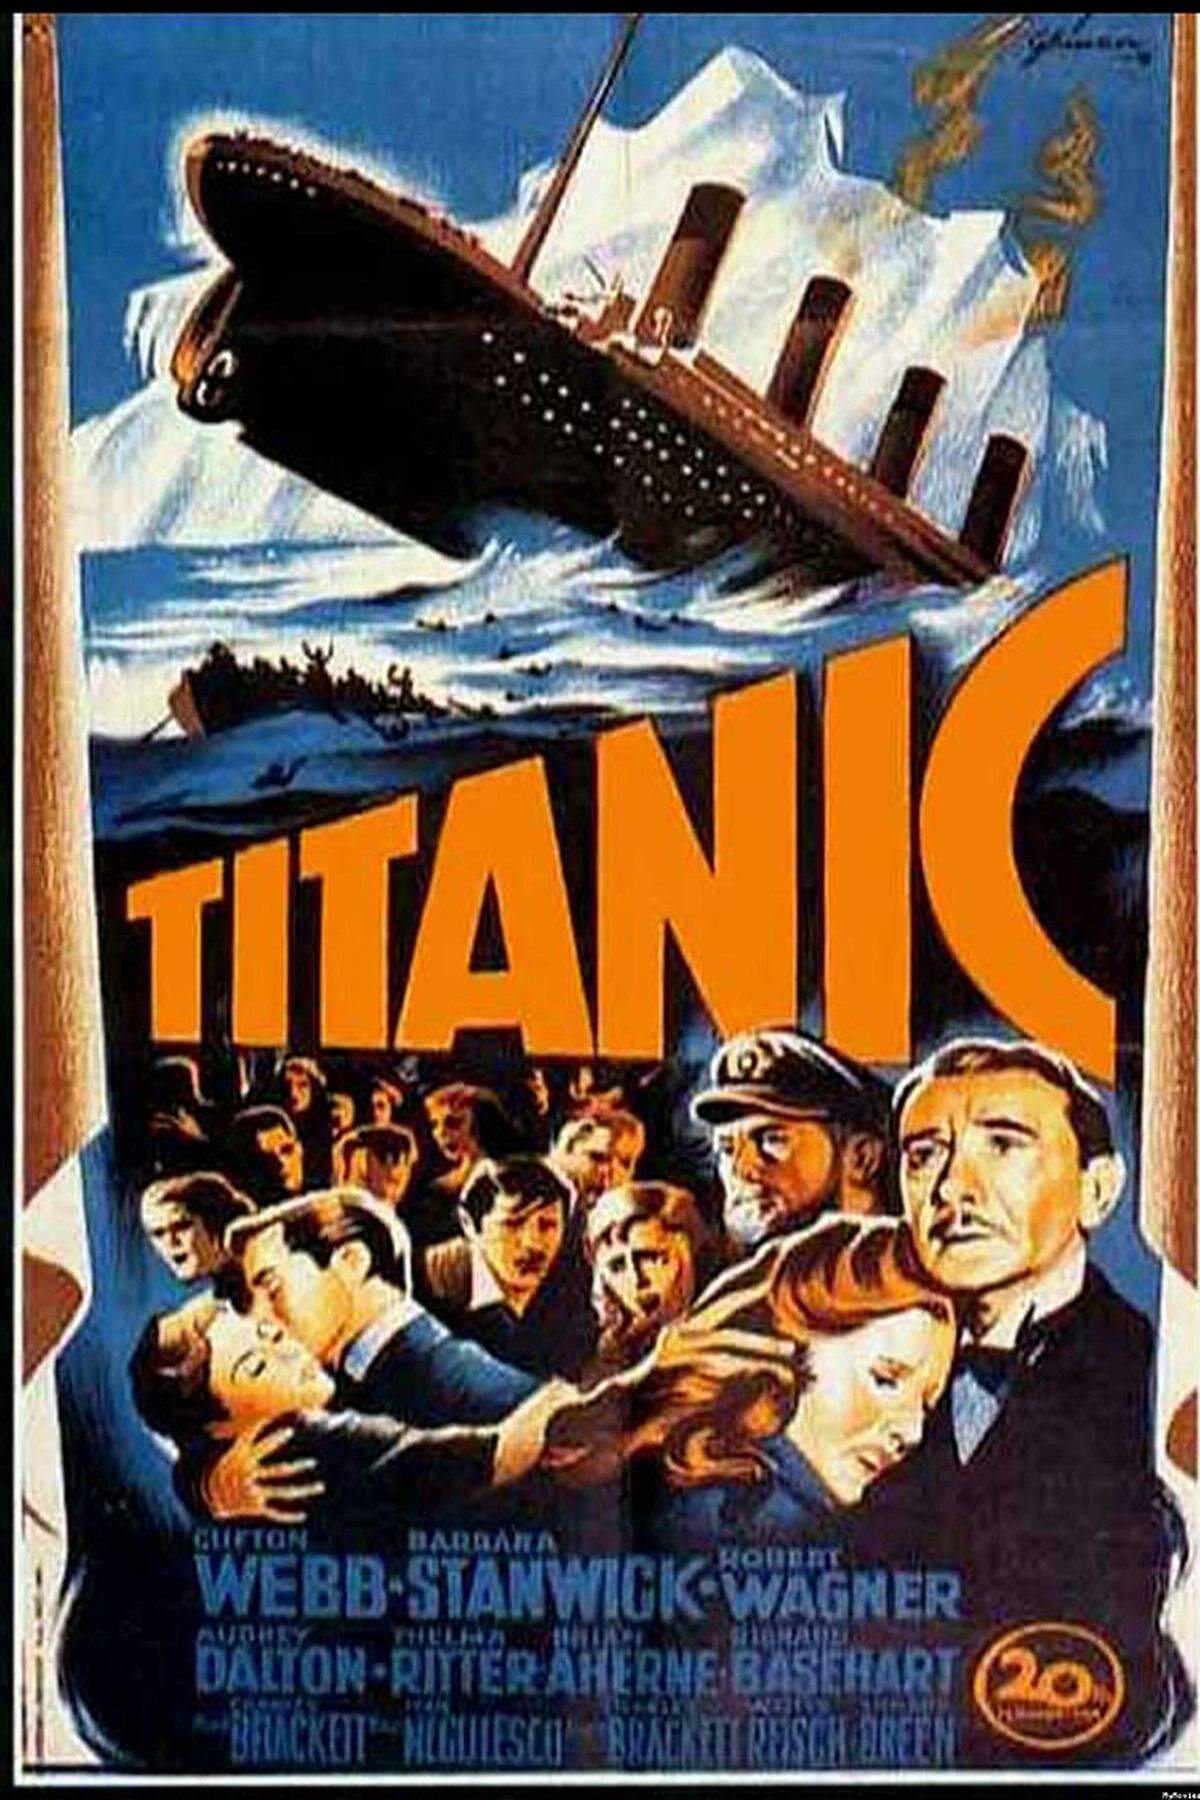 1929 wurde mit dem britischen Film "Atlantic" der erste Tonfilm zum Thema veröffentlicht. Weitere vierzehn Jahre später wurde der Stoff vom Deutschen Herbert Selpin verfilmt und von den Nazis als Propagandaproduktion genutzt. Es folgten 1953 die populäre Verfilmung "Titanic" (dt.: Untergang der Titanic) mit Barbara Stanwyck, Clifton Webb und Robert Wagner.